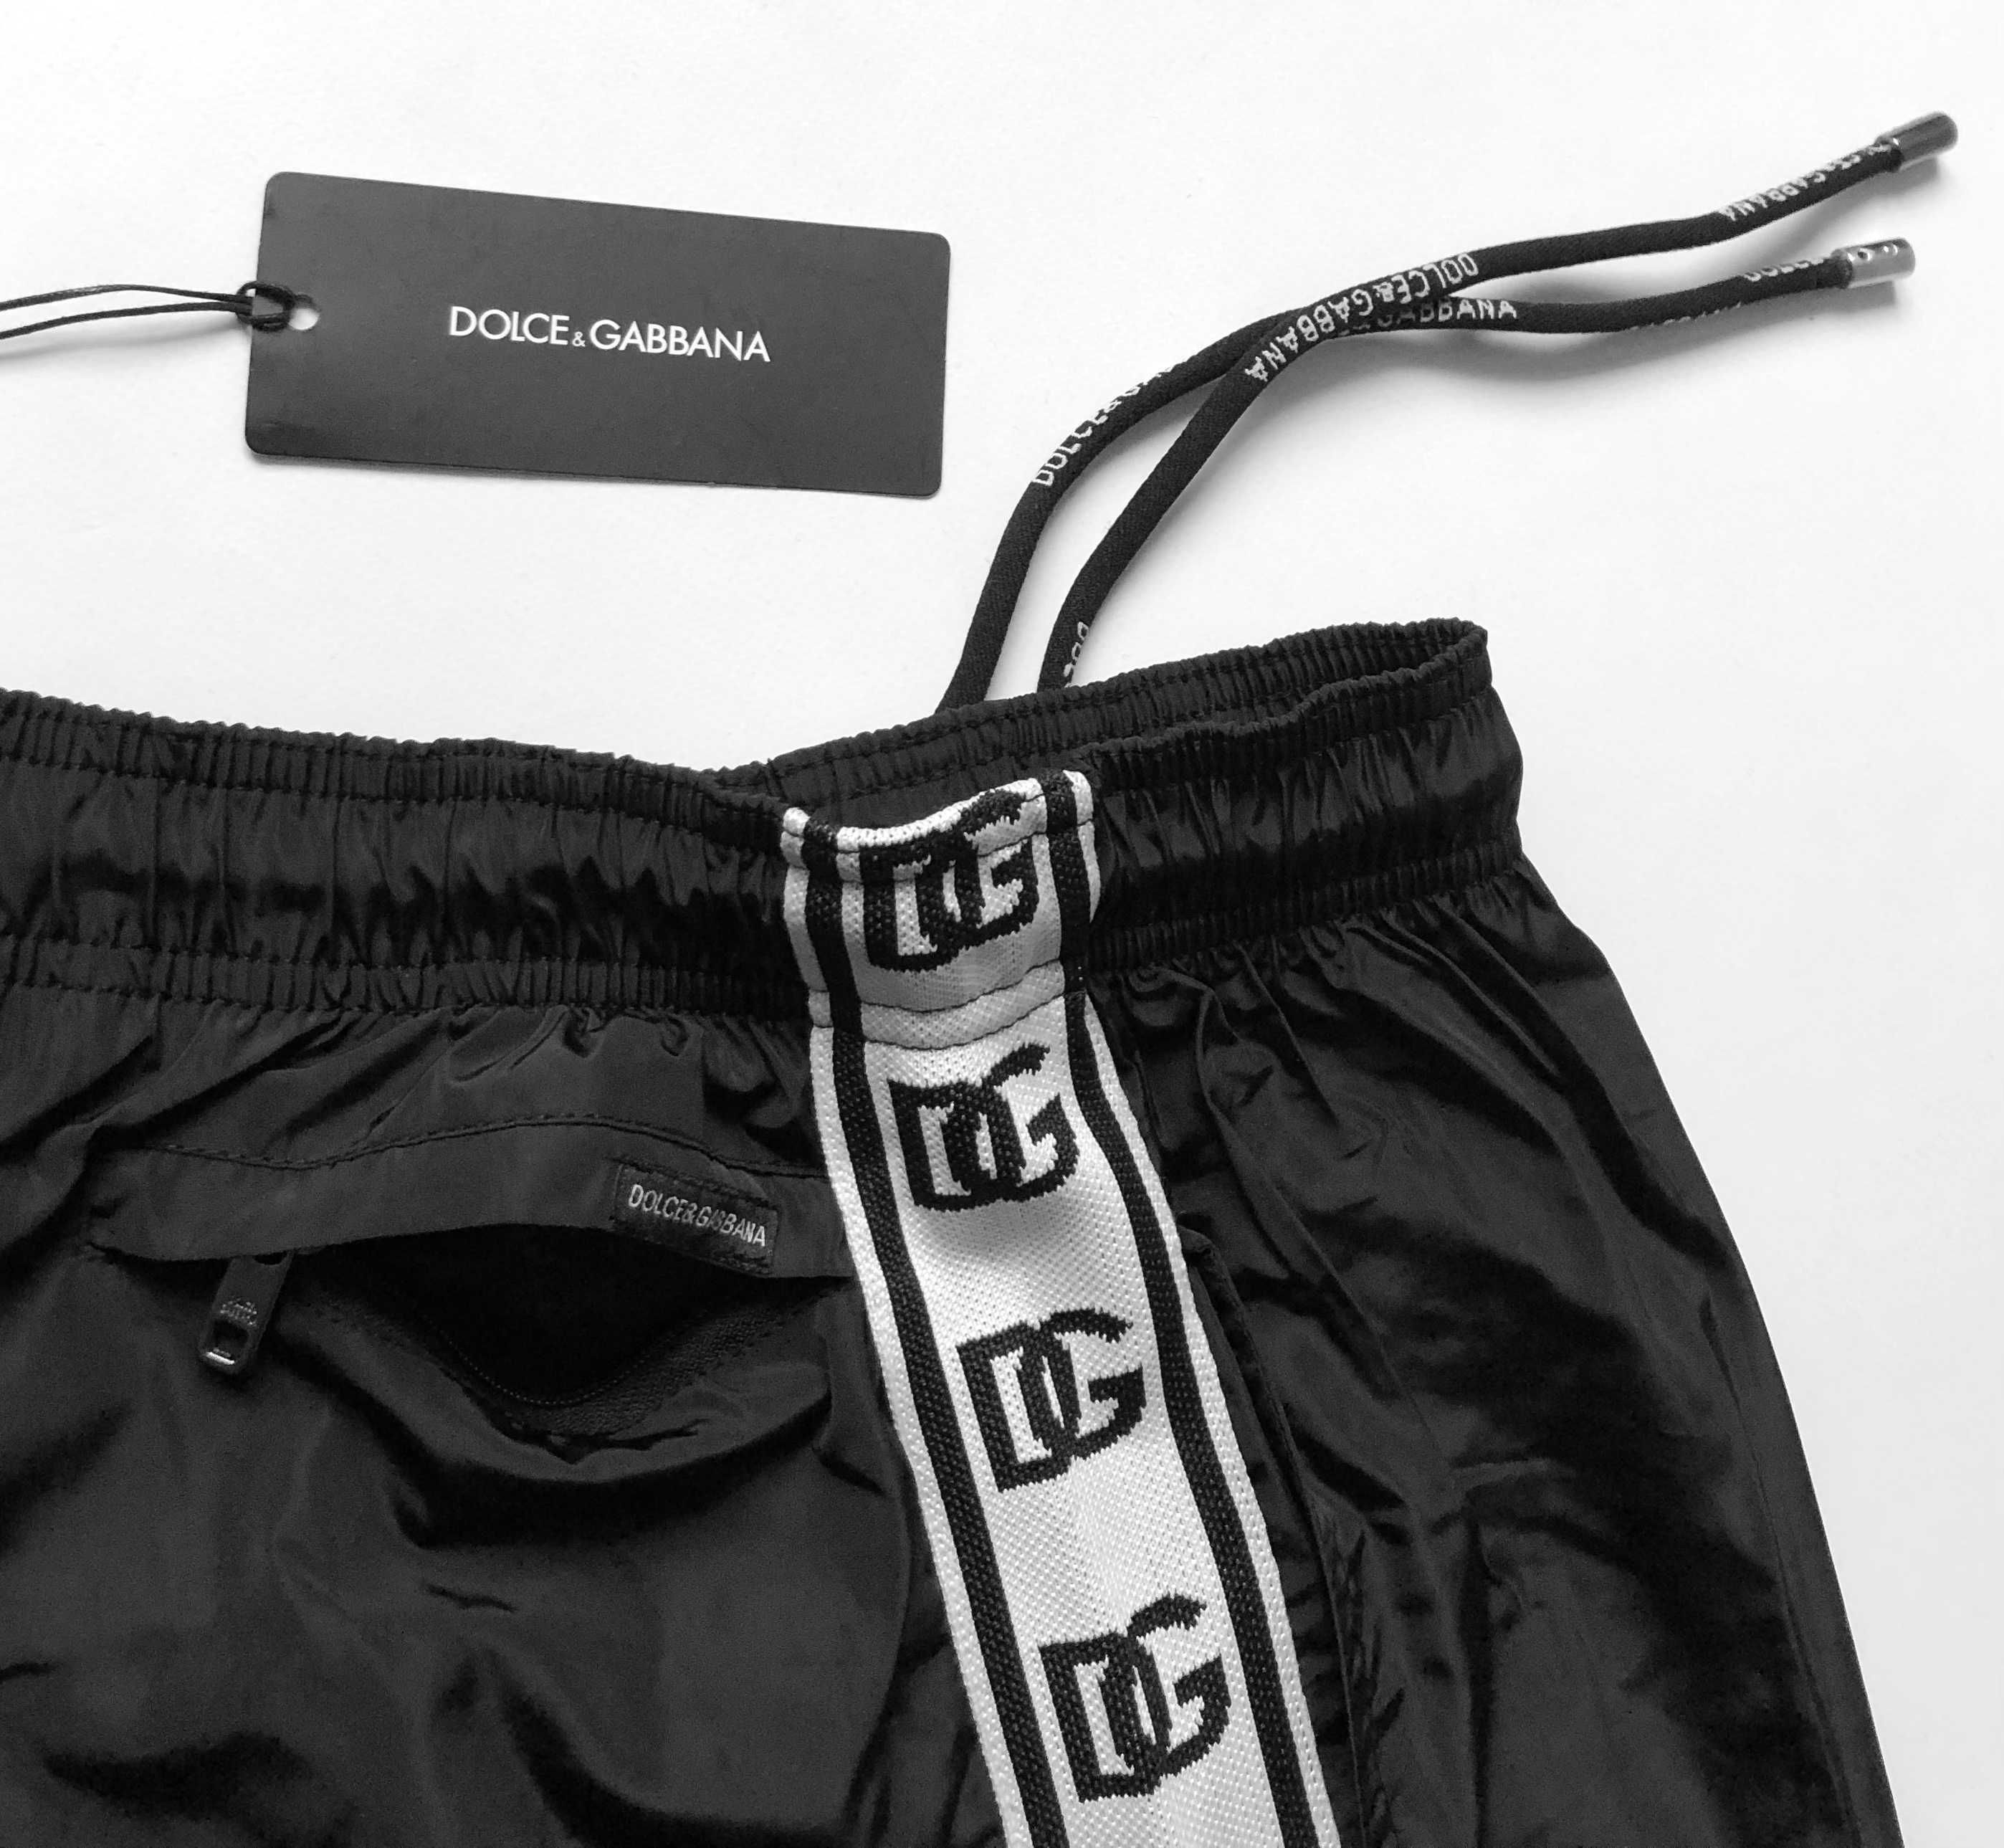 DG Dolce&Gabbana kąpielówki szorty basenowe S M L XL XXL